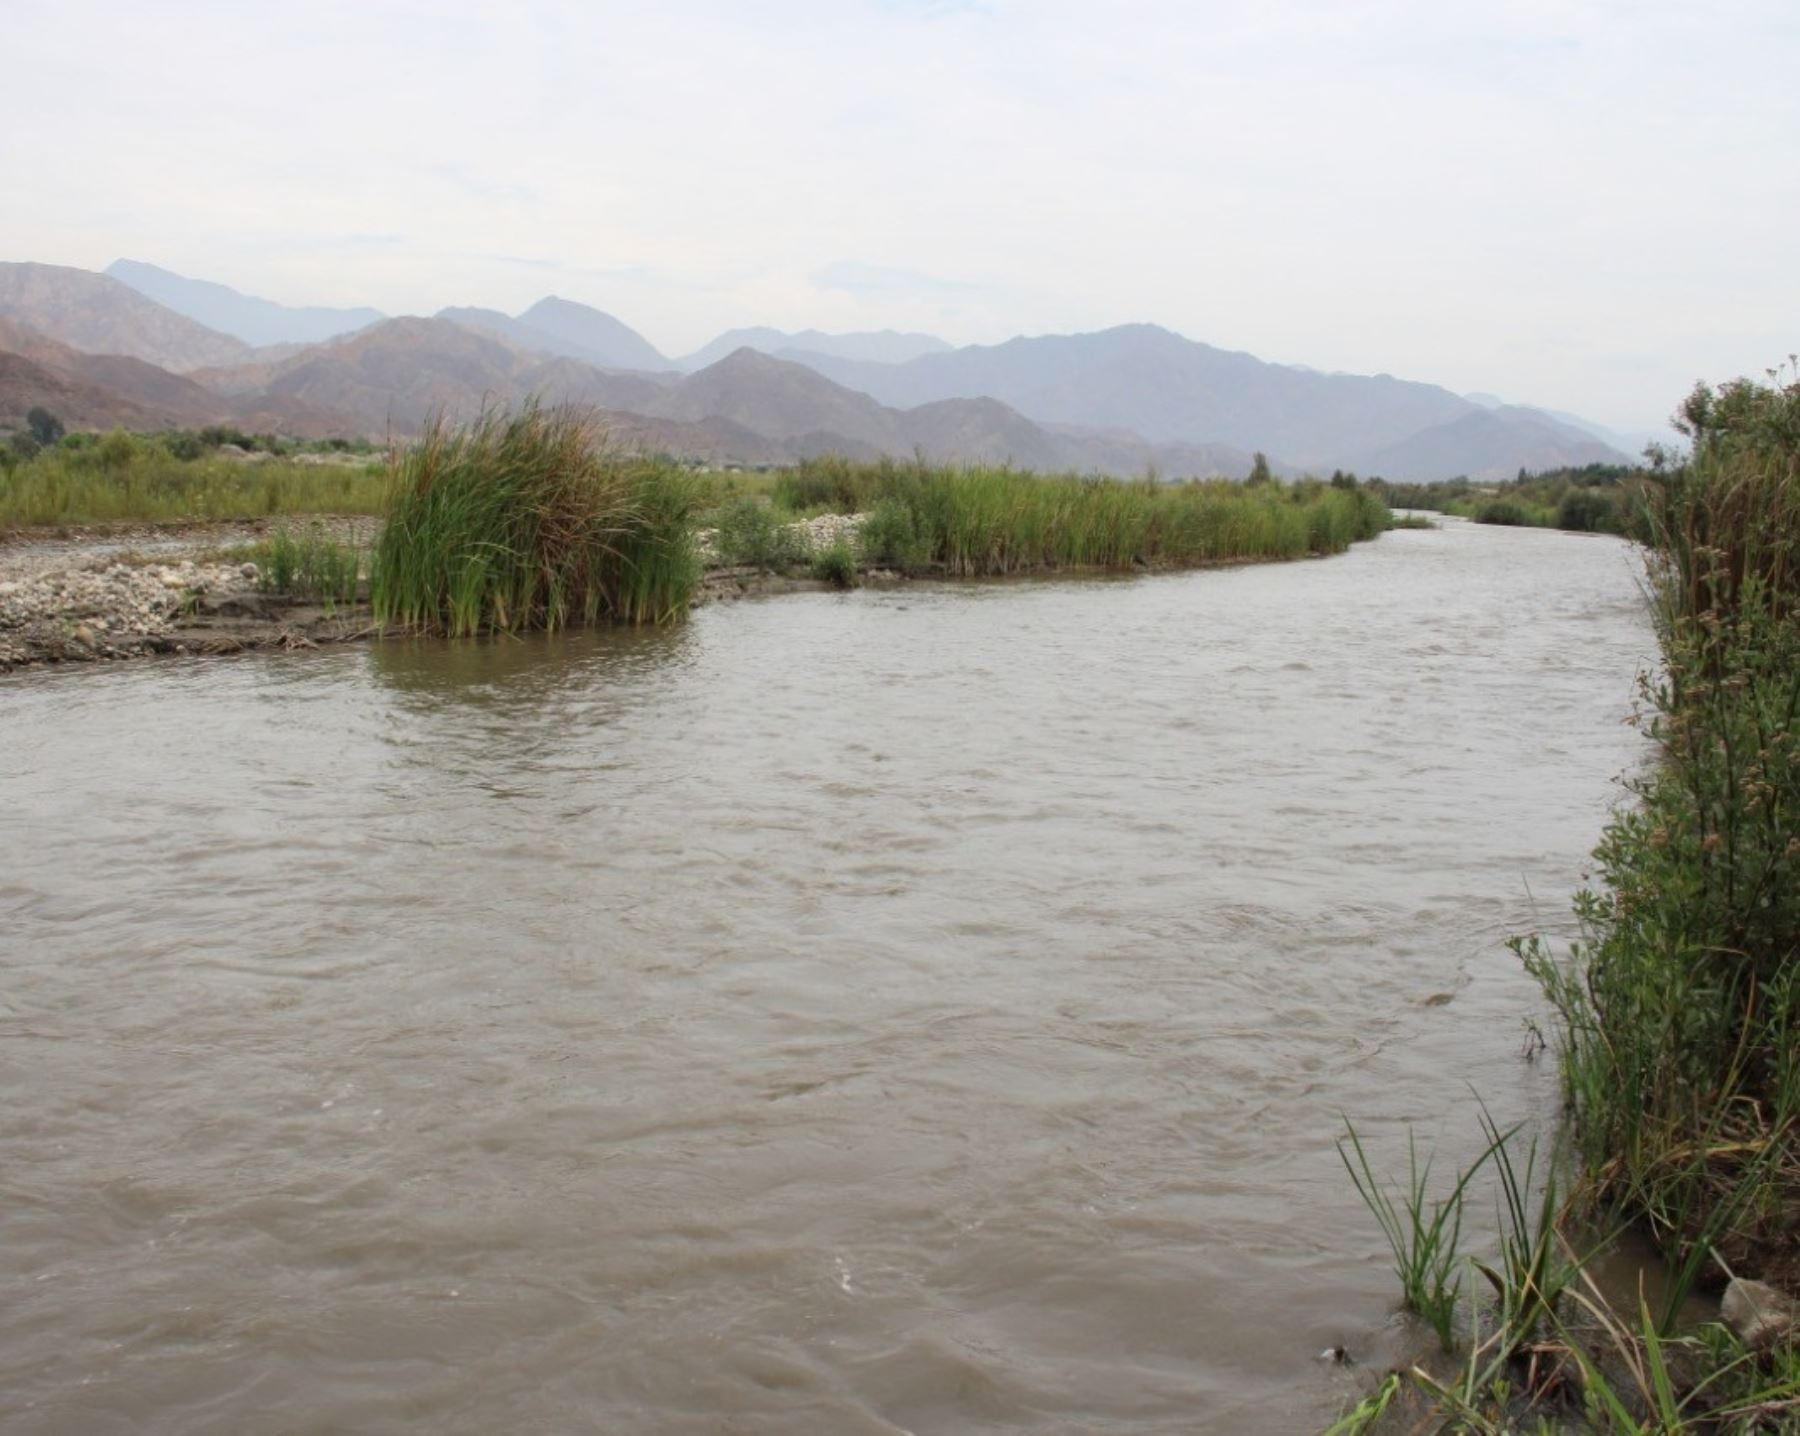 La Municipalidad Provincial de Ascope inició la descolmatación del río Chicama para prevenir daños en dicha provincia ubicada en La Libertad a causa de las lluvias. ANDINA/Difusión